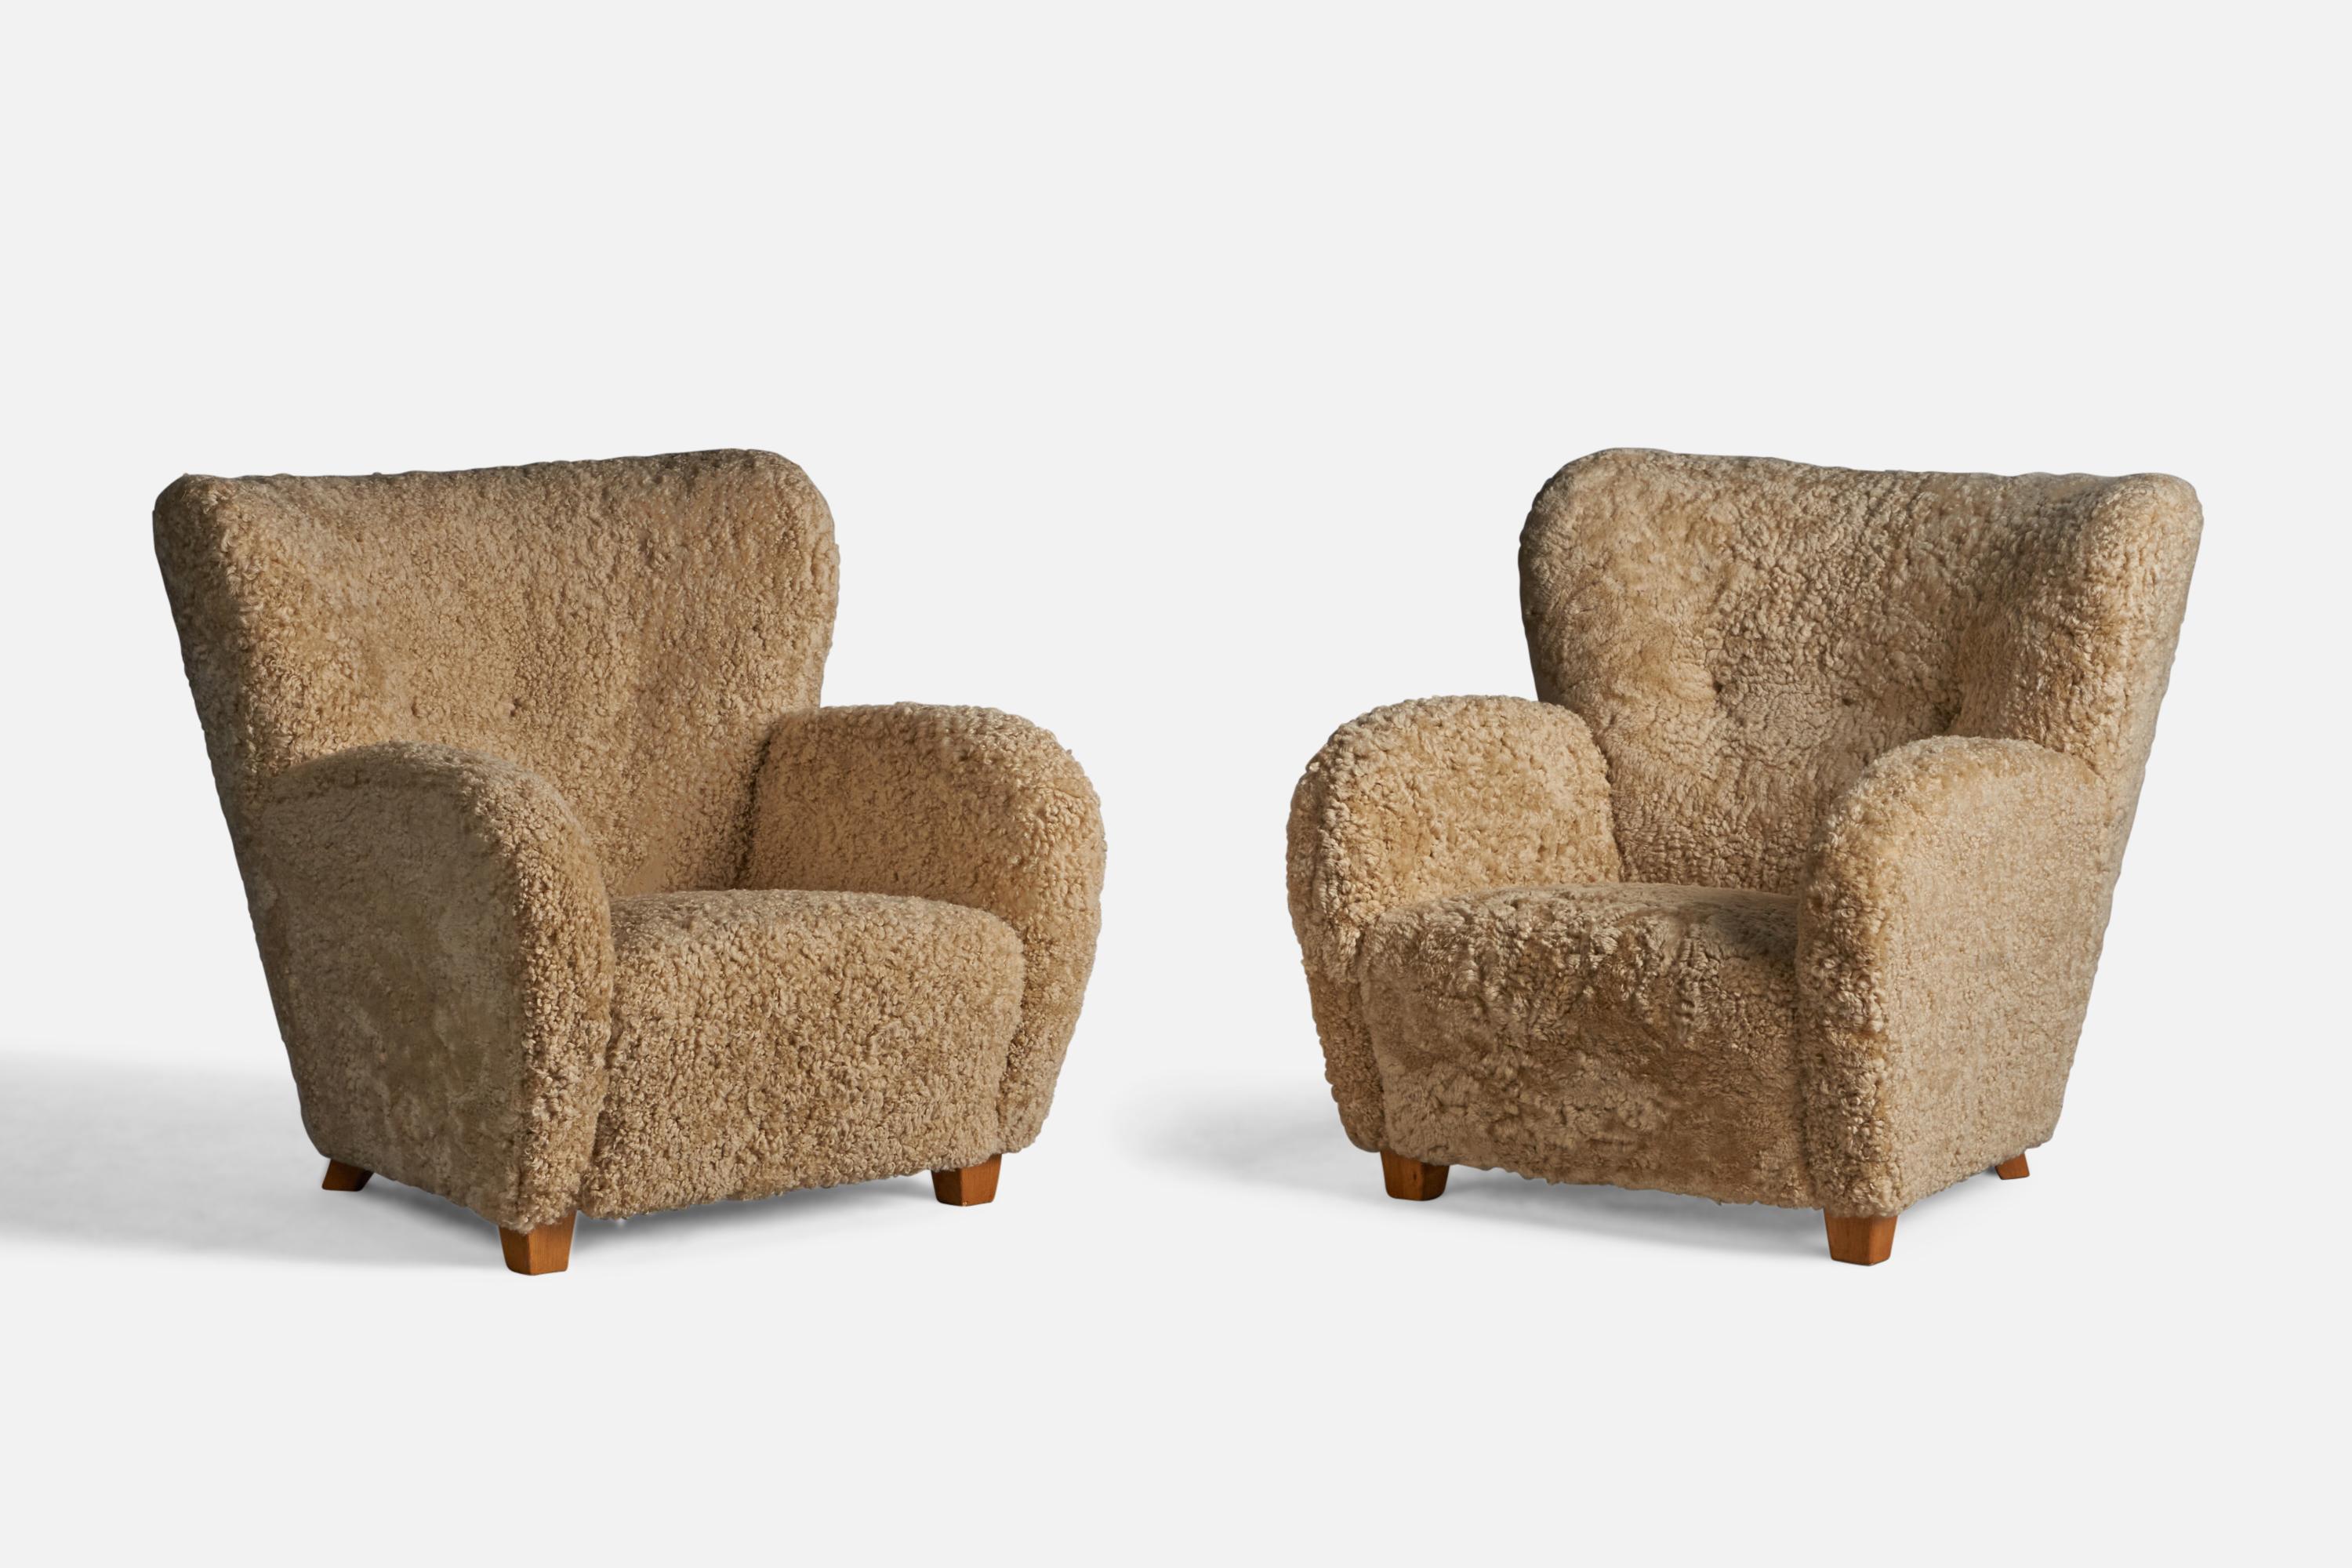 Paire de chaises de salon organiques en bois et en shearling beige, conçues et produites en Finlande dans les années 1940.

Hauteur d'assise de 13,5 pouces
